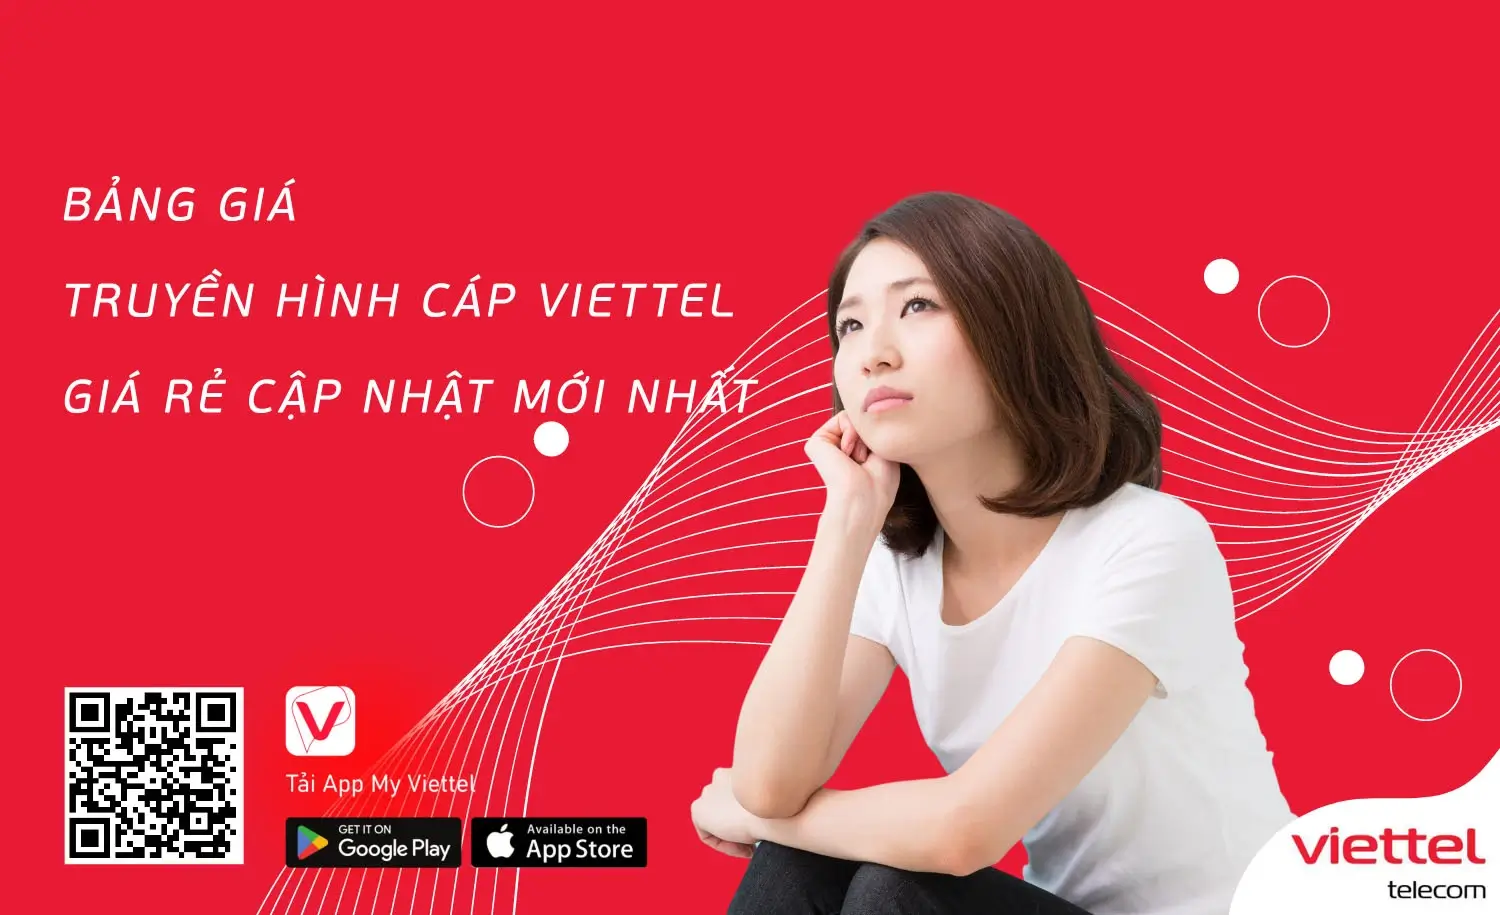 Tận hưởng cuộc sống tiện ích cùng dịch vụ truyền hình Viettel TV360 tại Tây Ninh